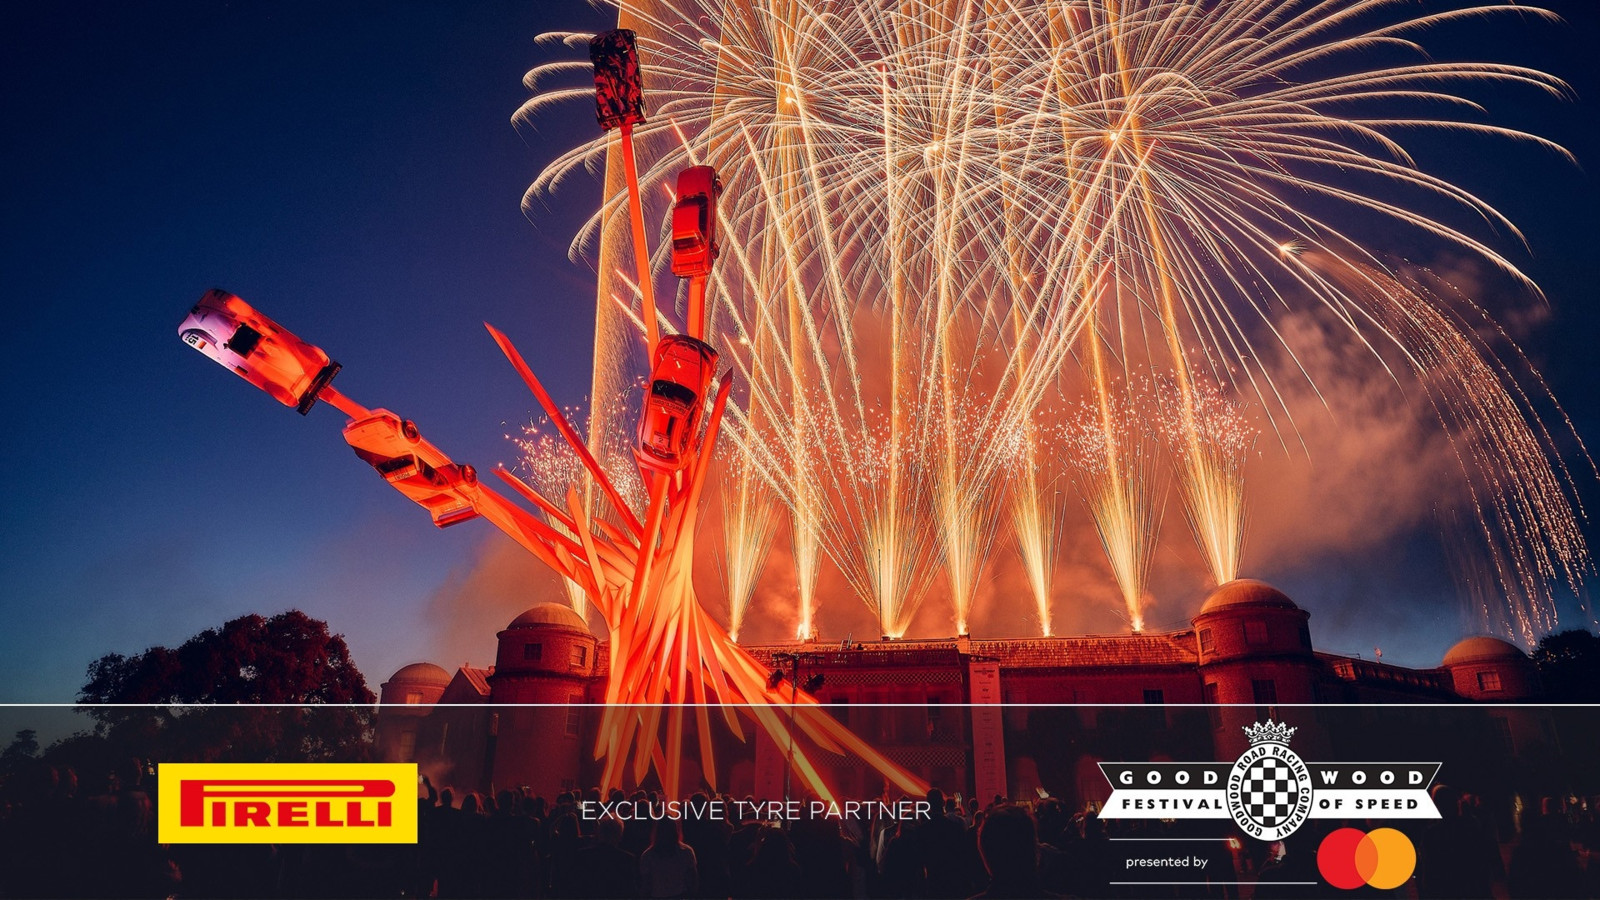 Pirelli geht mit dem Goodwood-Festival of Speed eine mehrjährige Partnerschaft ein.